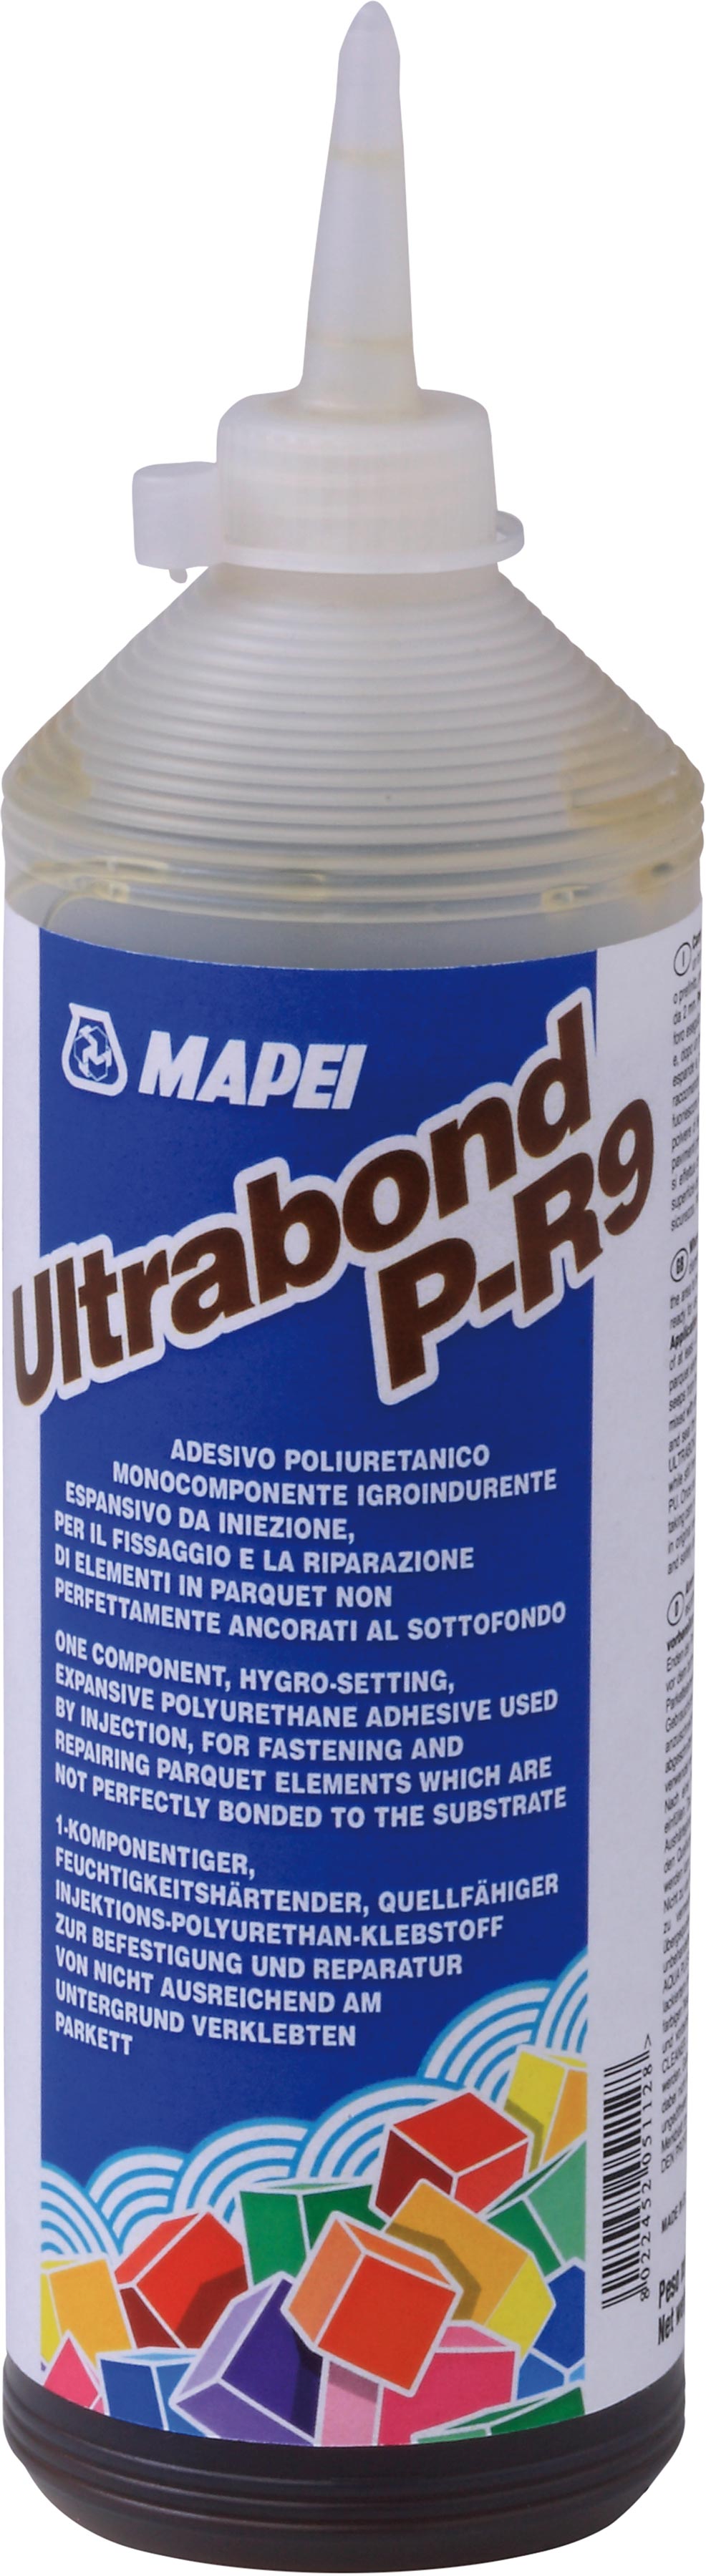 Ultrabond P-R9 - Flasche 0.5 kg